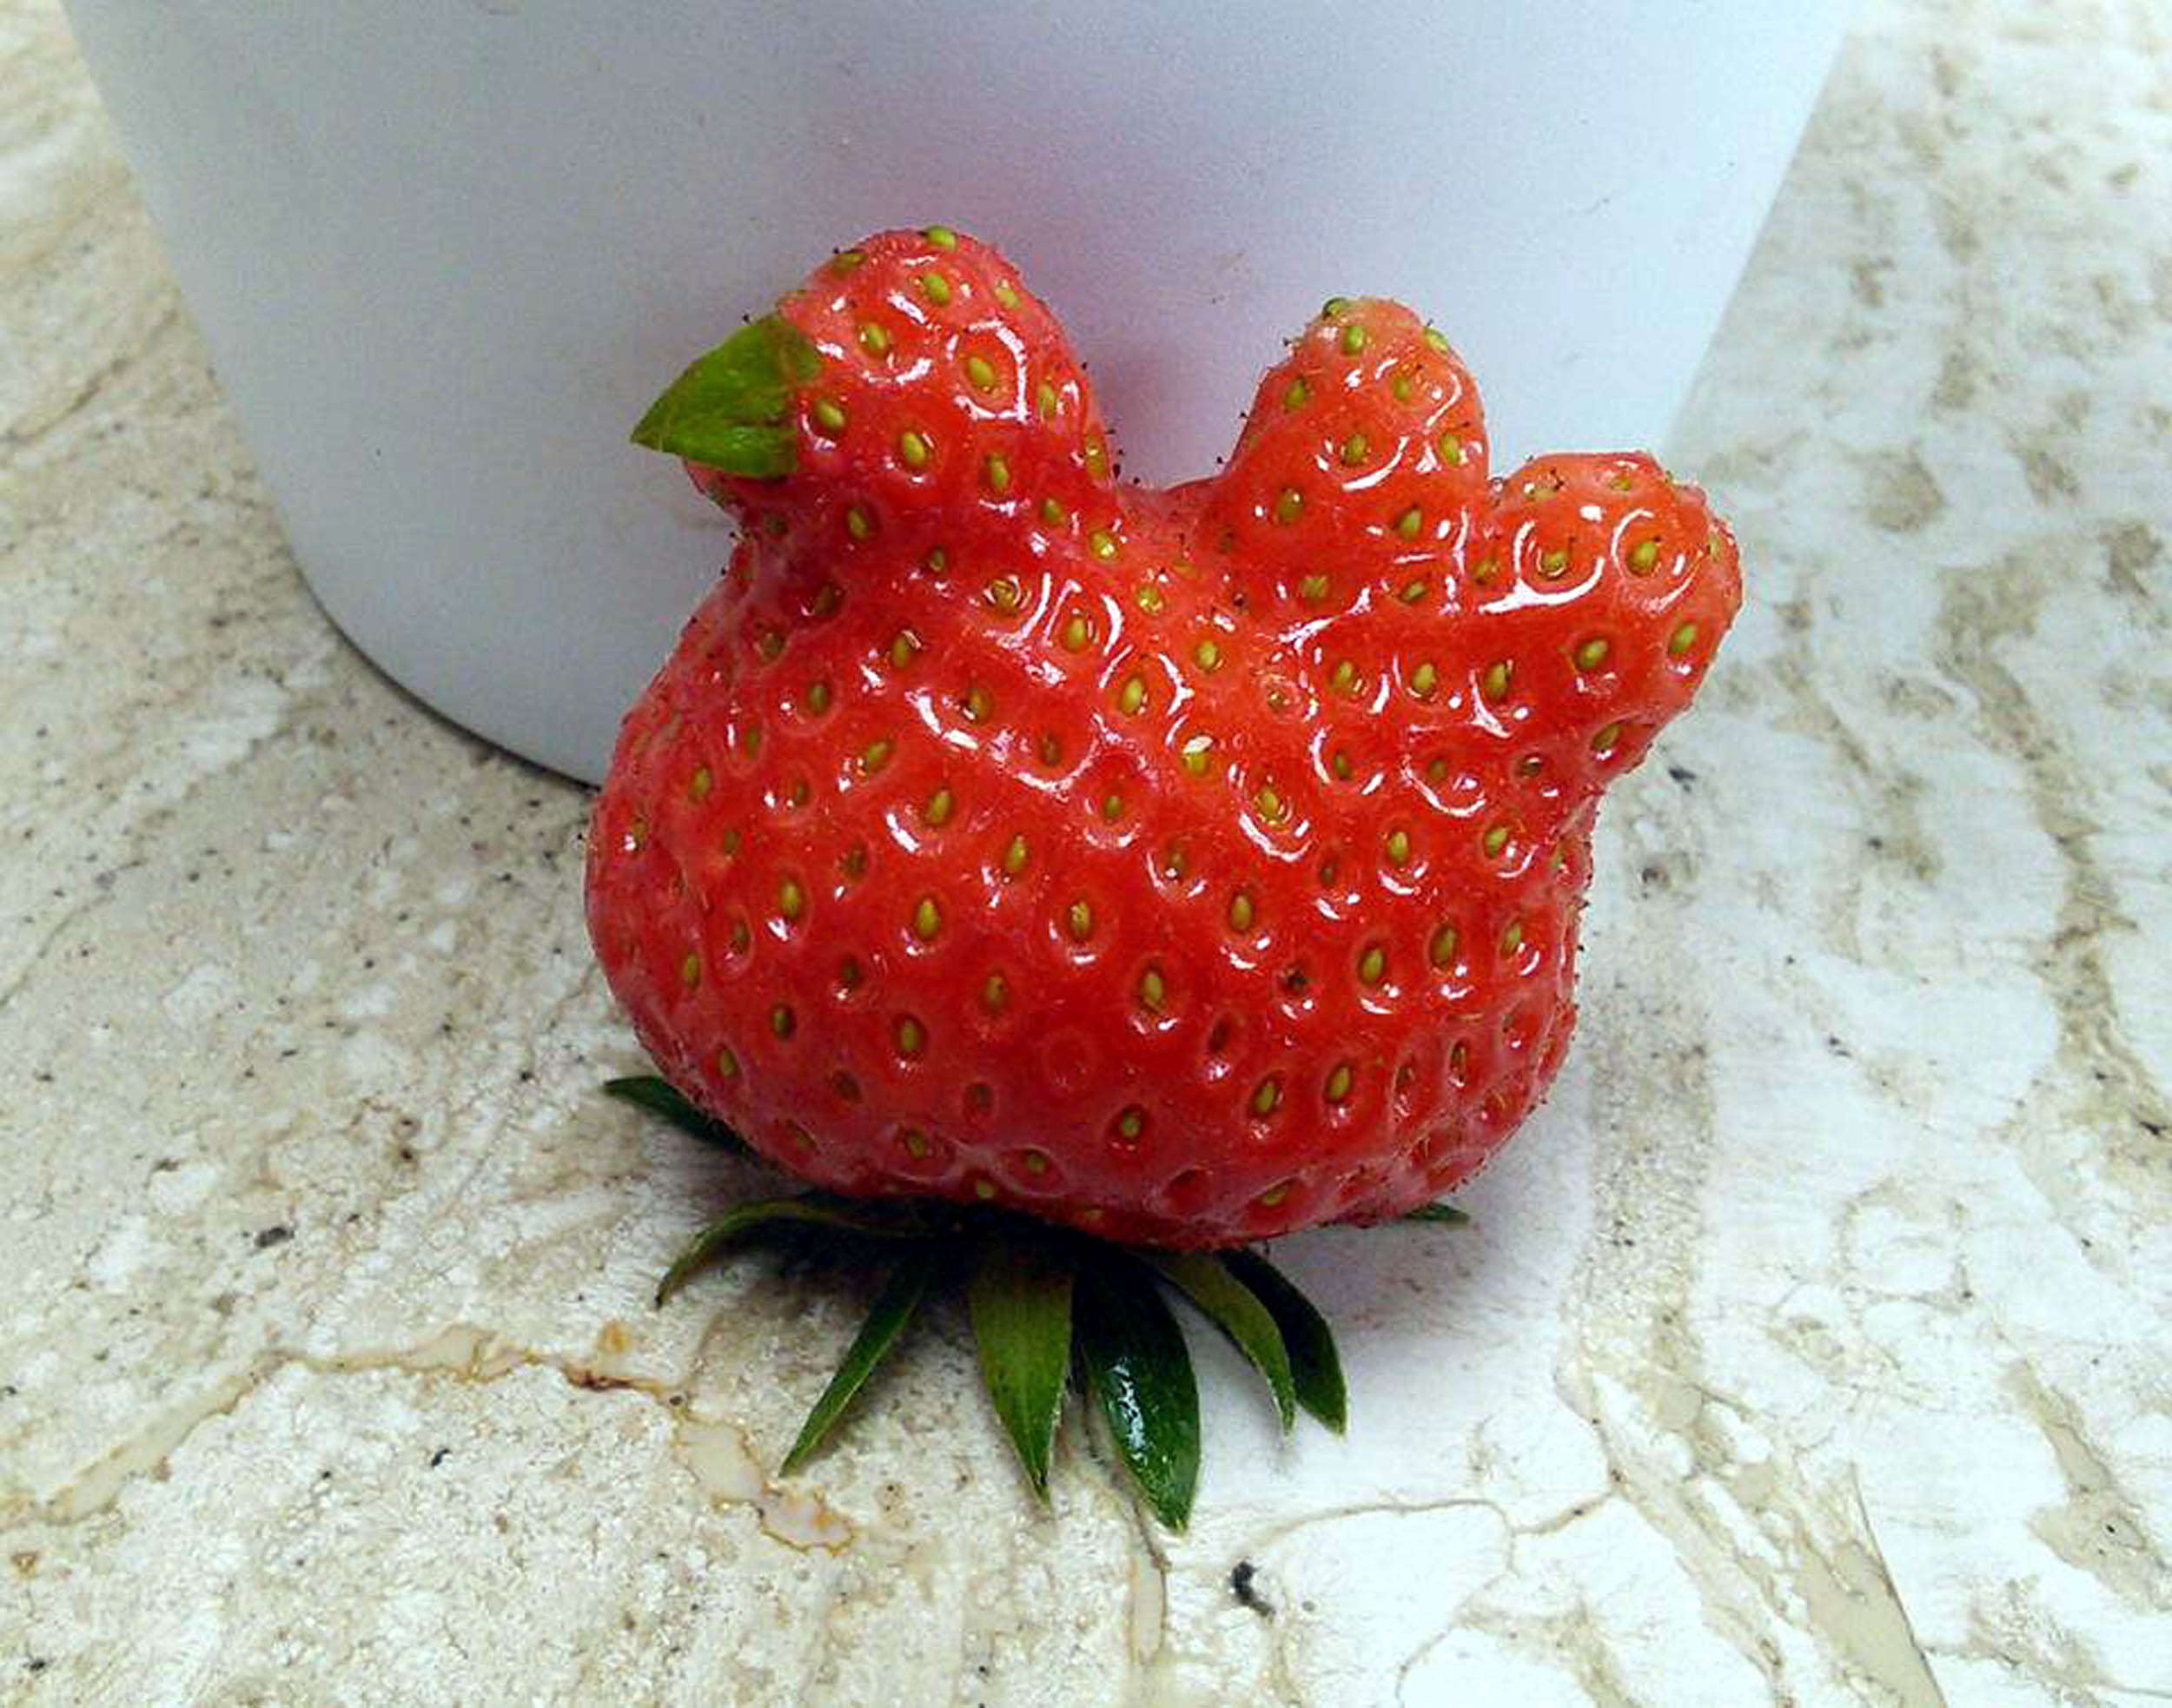 Ich sollte so viel Glück haben.  .  .  Schau dir das an – eine Erdbeere, die wie ein Huhn aussieht.  Was für ein Mist!